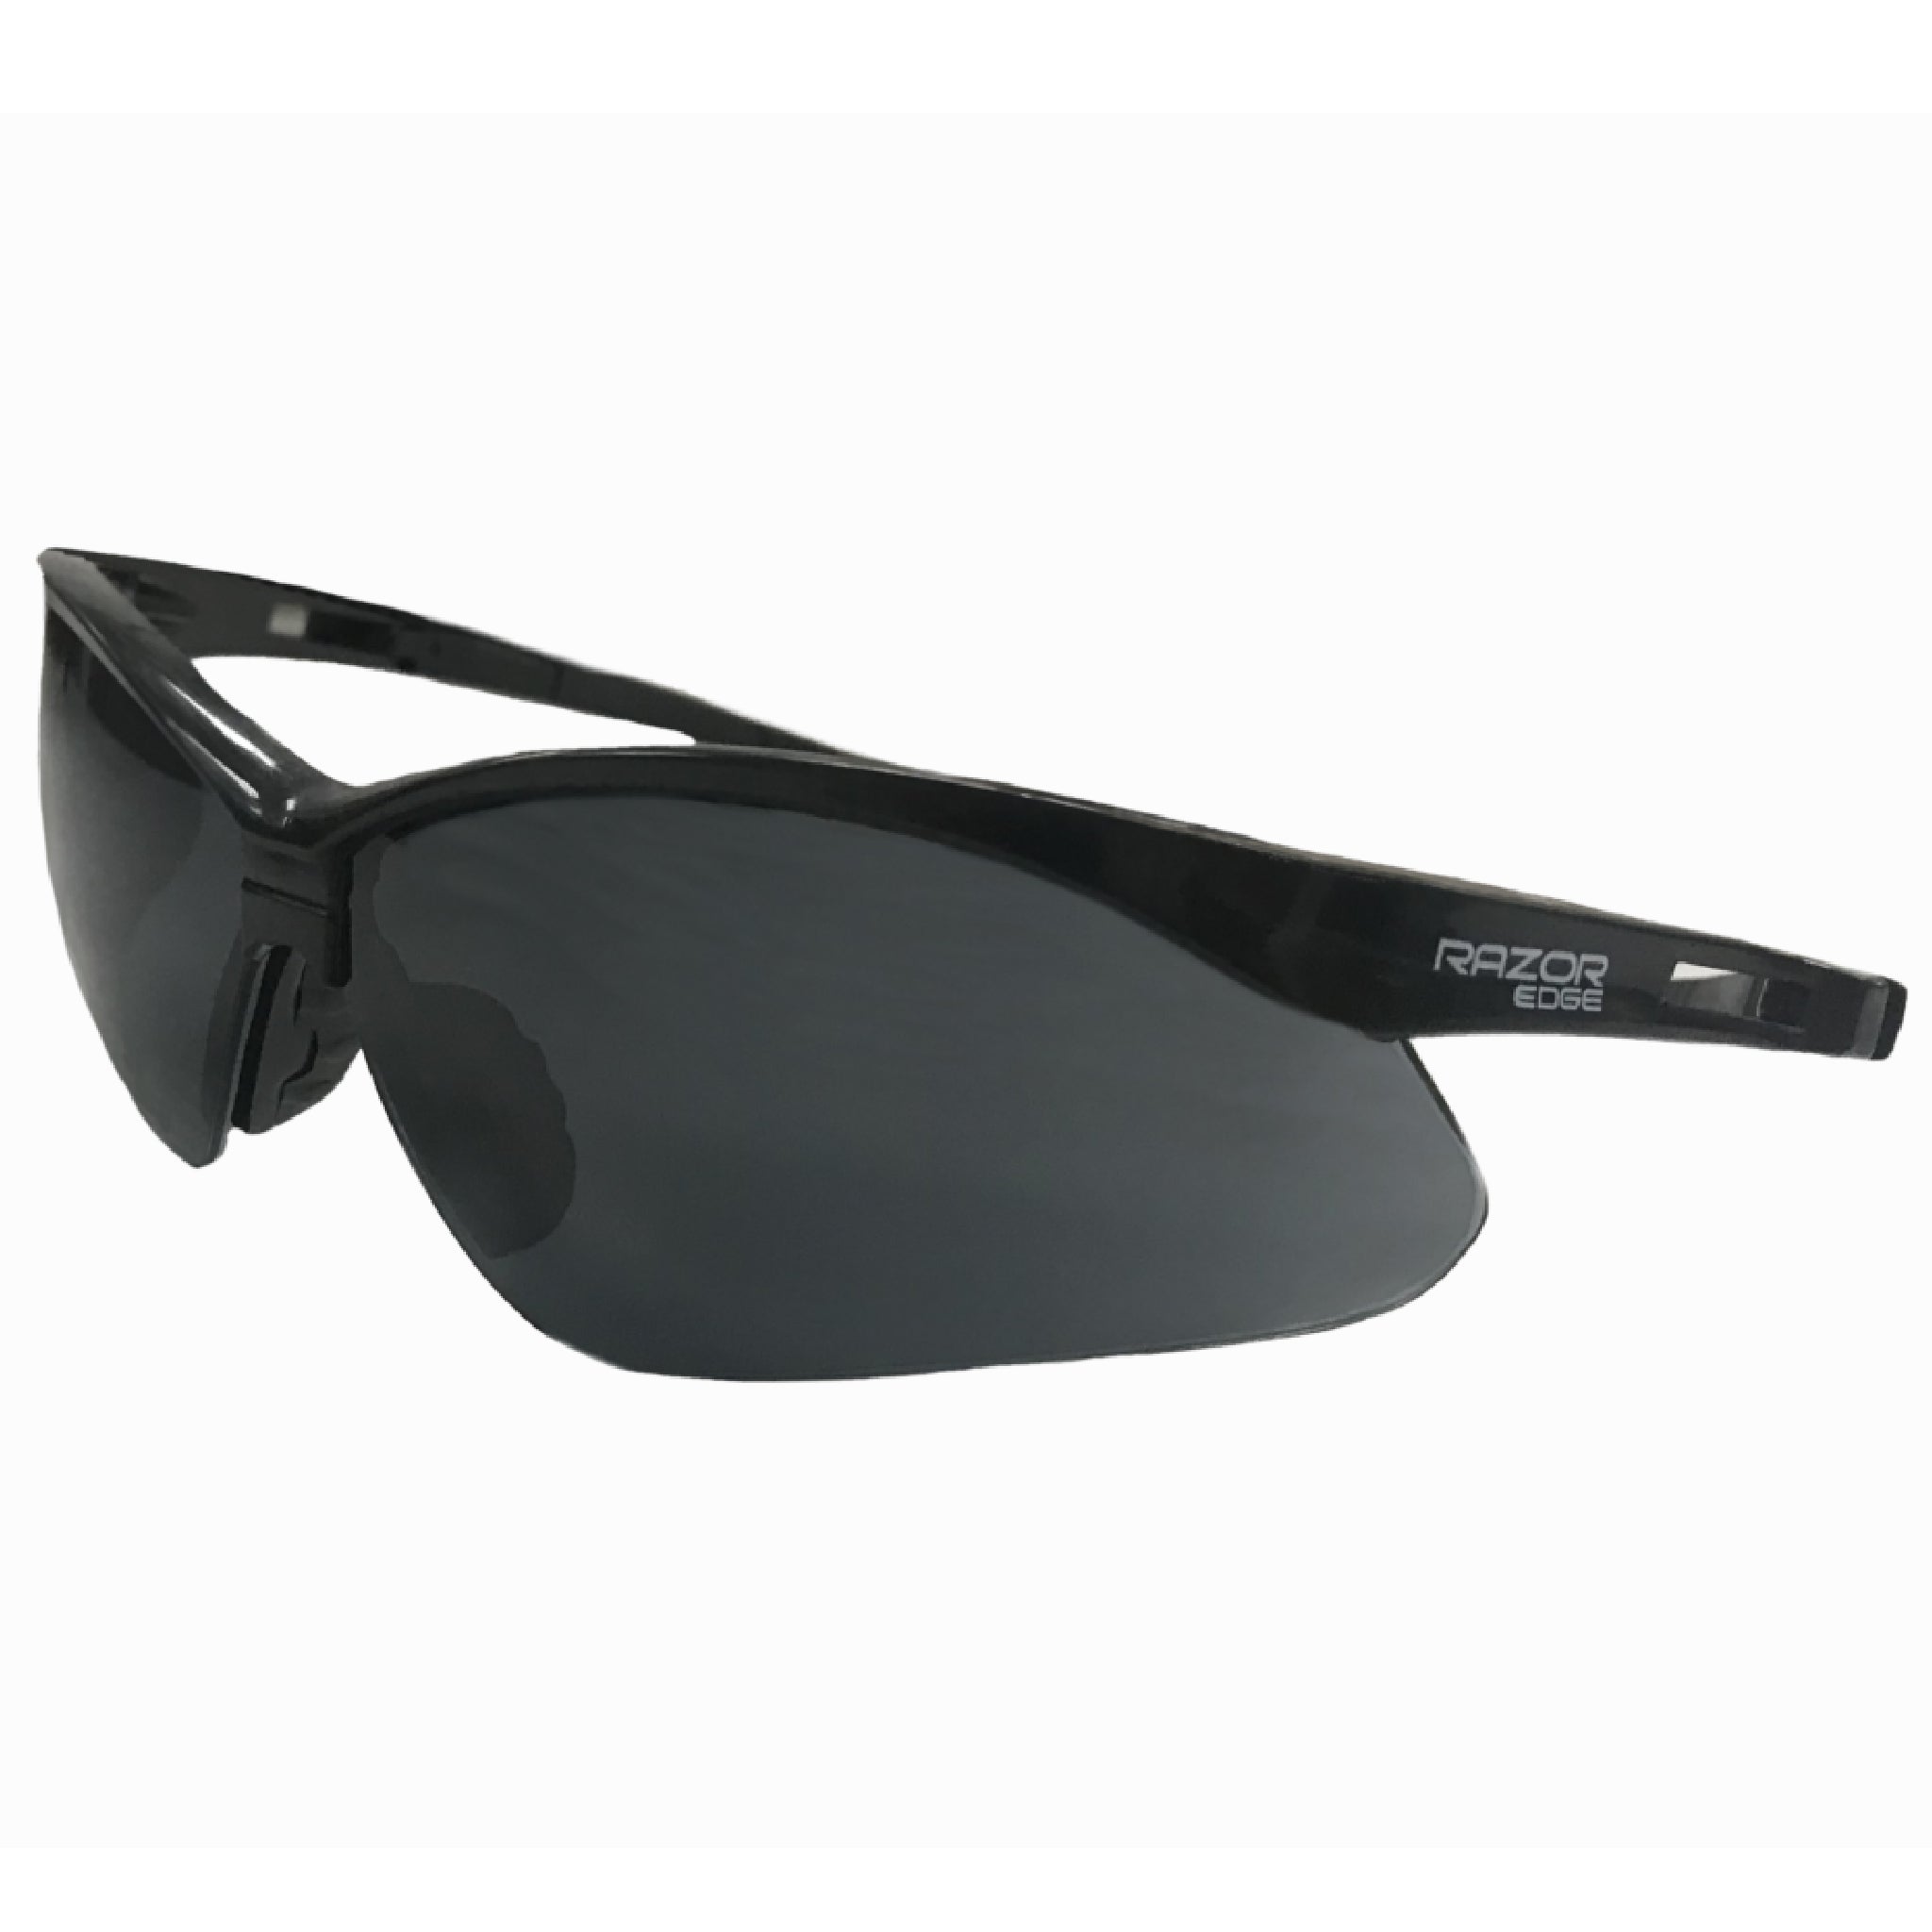 Seattle Glove Company RE50-SMK Glasses Razor Edge Black Smoke